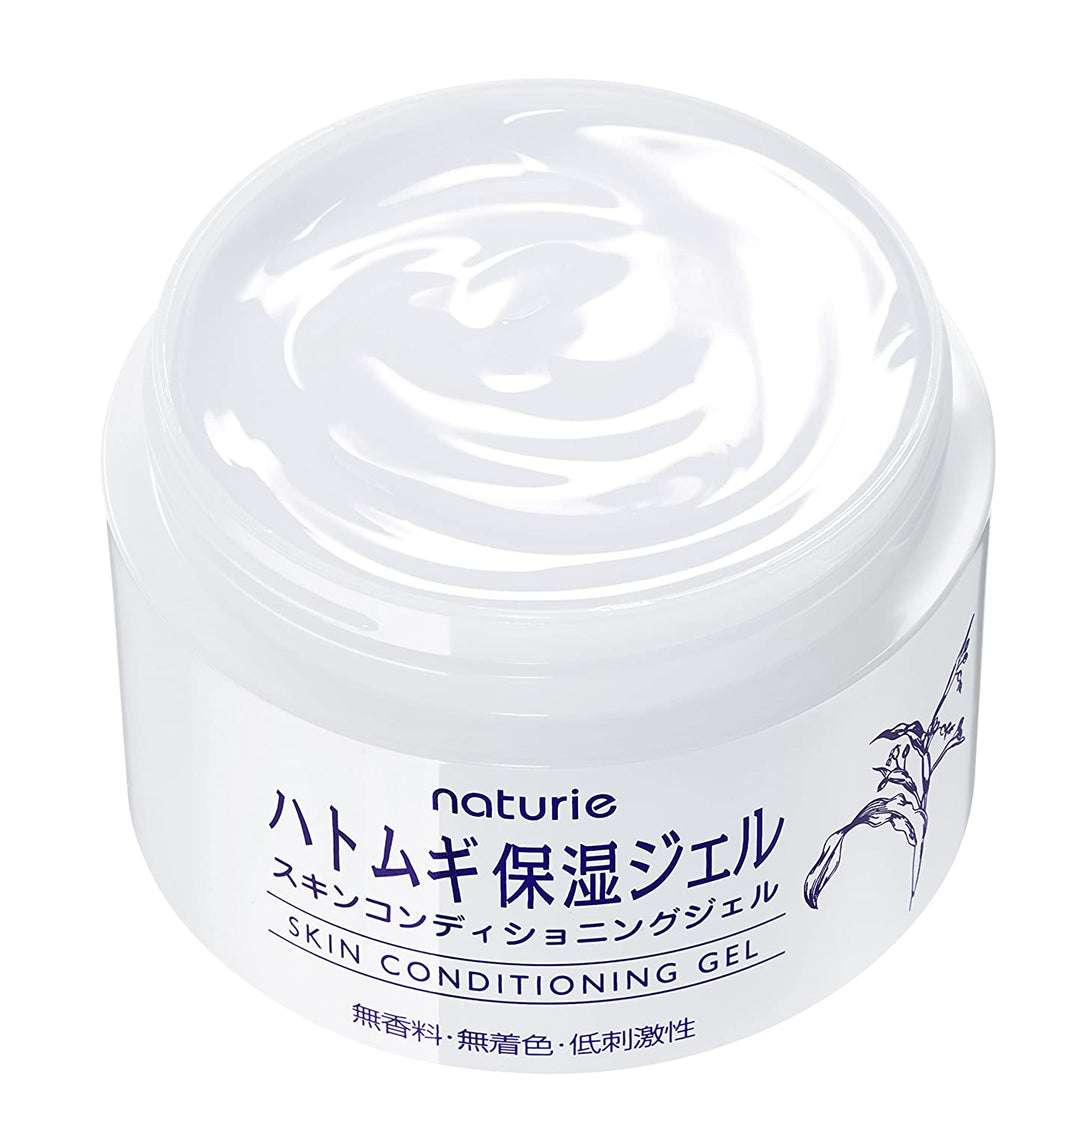 Imju Naturie Hatomugi Skin Conditioning Gel 180g Japanese 